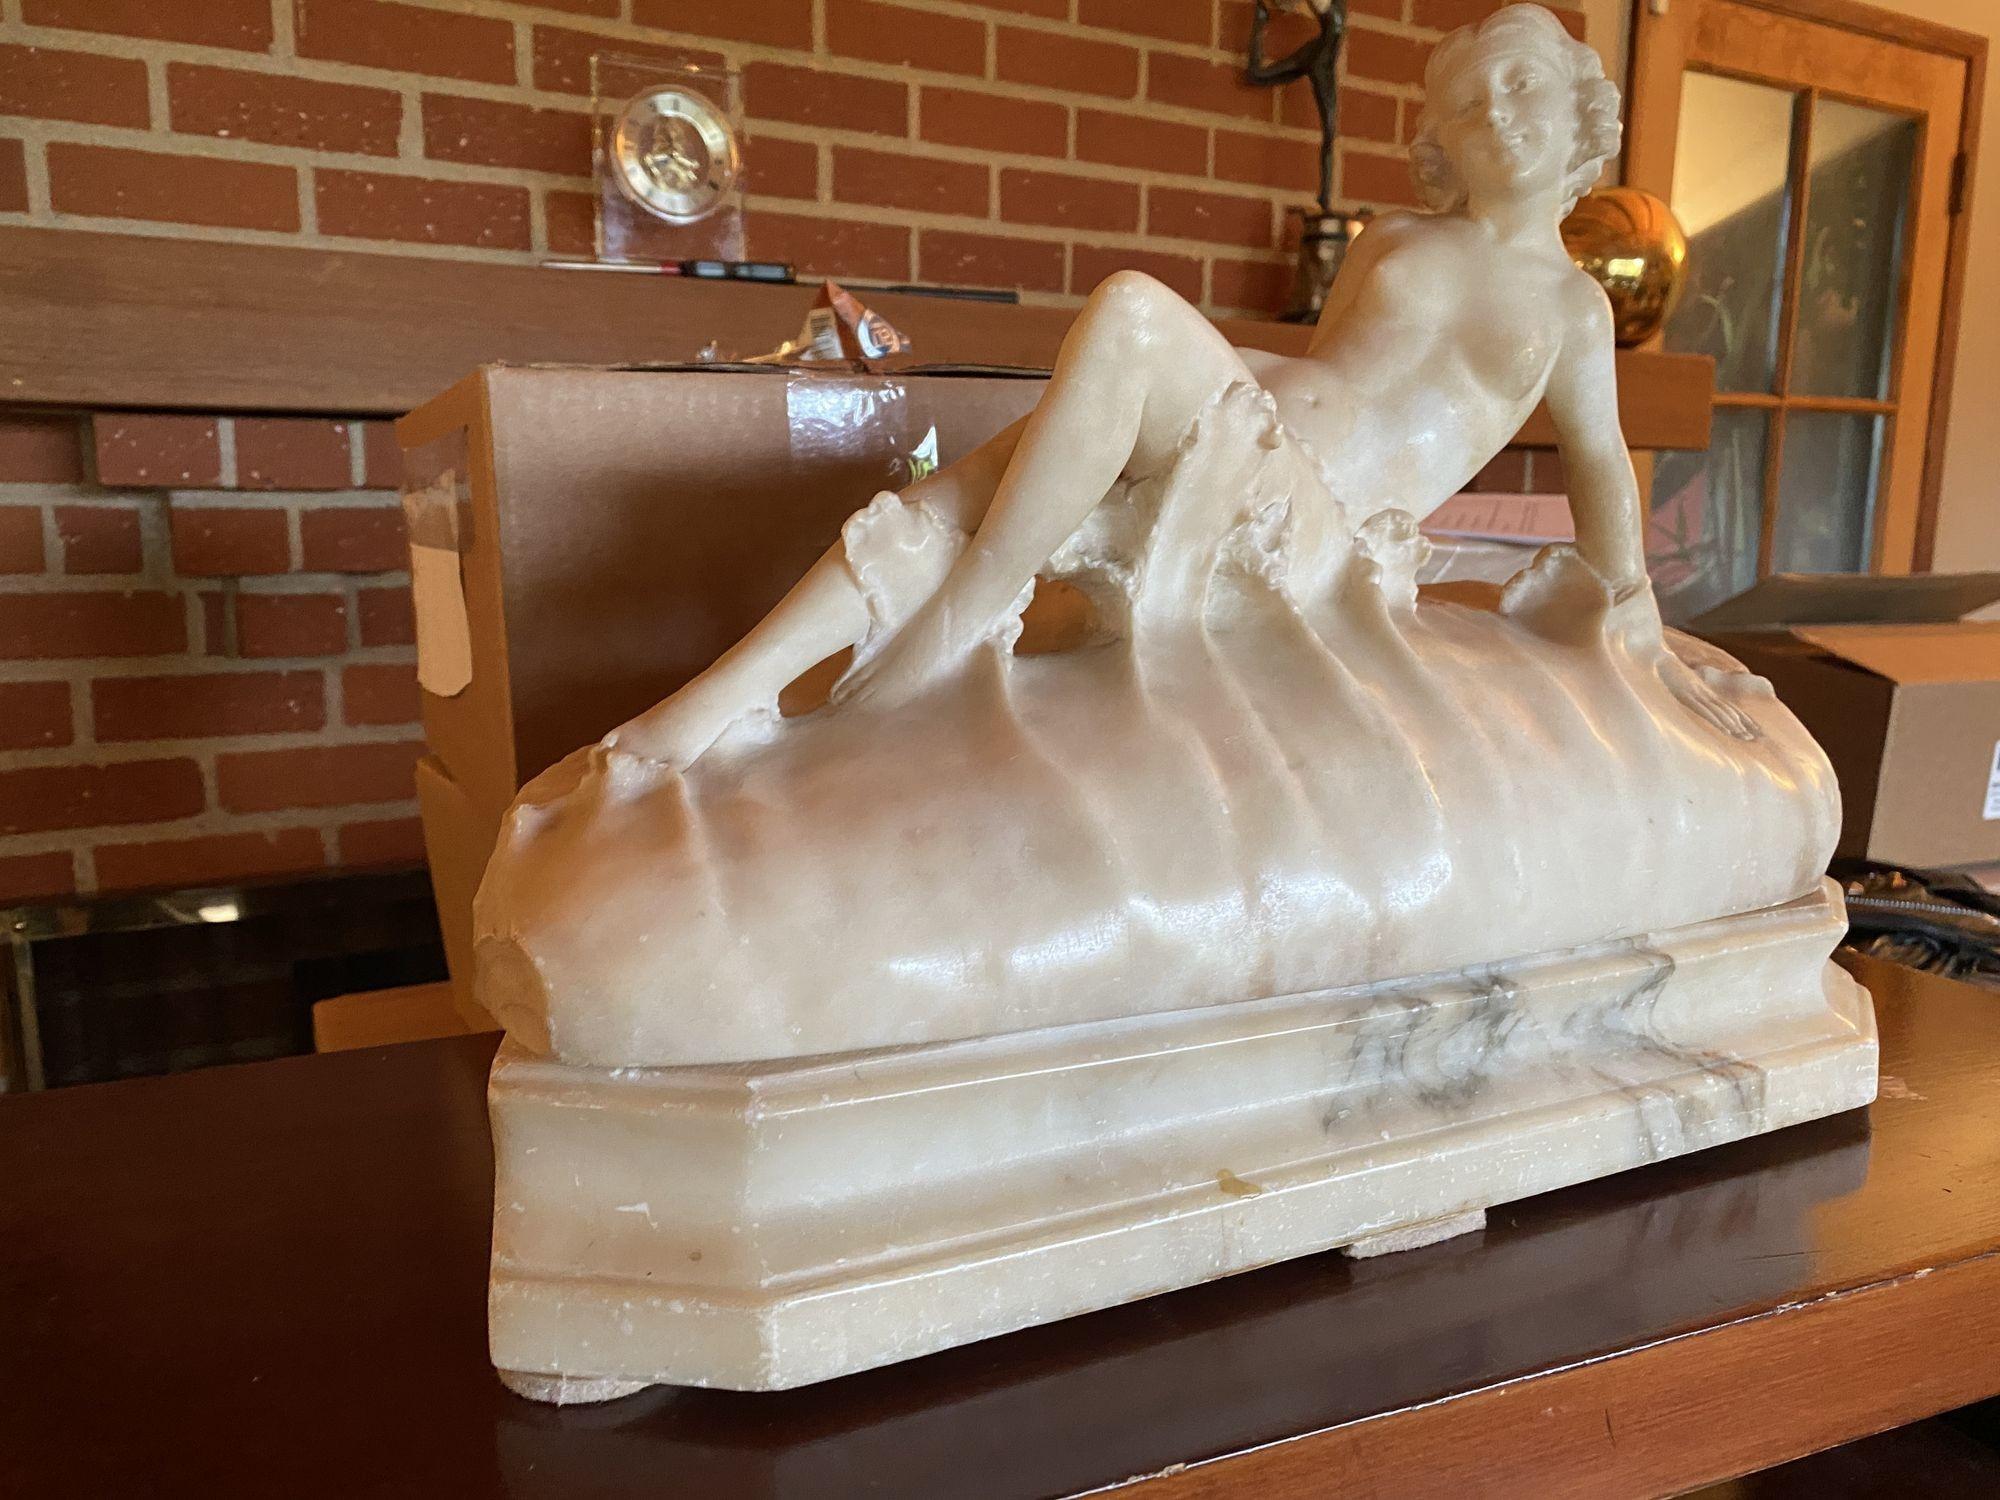 Original handgeschnitzter heller Alabaster-Akt, der eine junge nackte Frau darstellt, die in den Wellen des Meeres liegt. Diese einzigartige Skulptur leuchtet von innen aus einer Standard-US-Glühbirne und hat eine erstaunliche Form und Detail, die